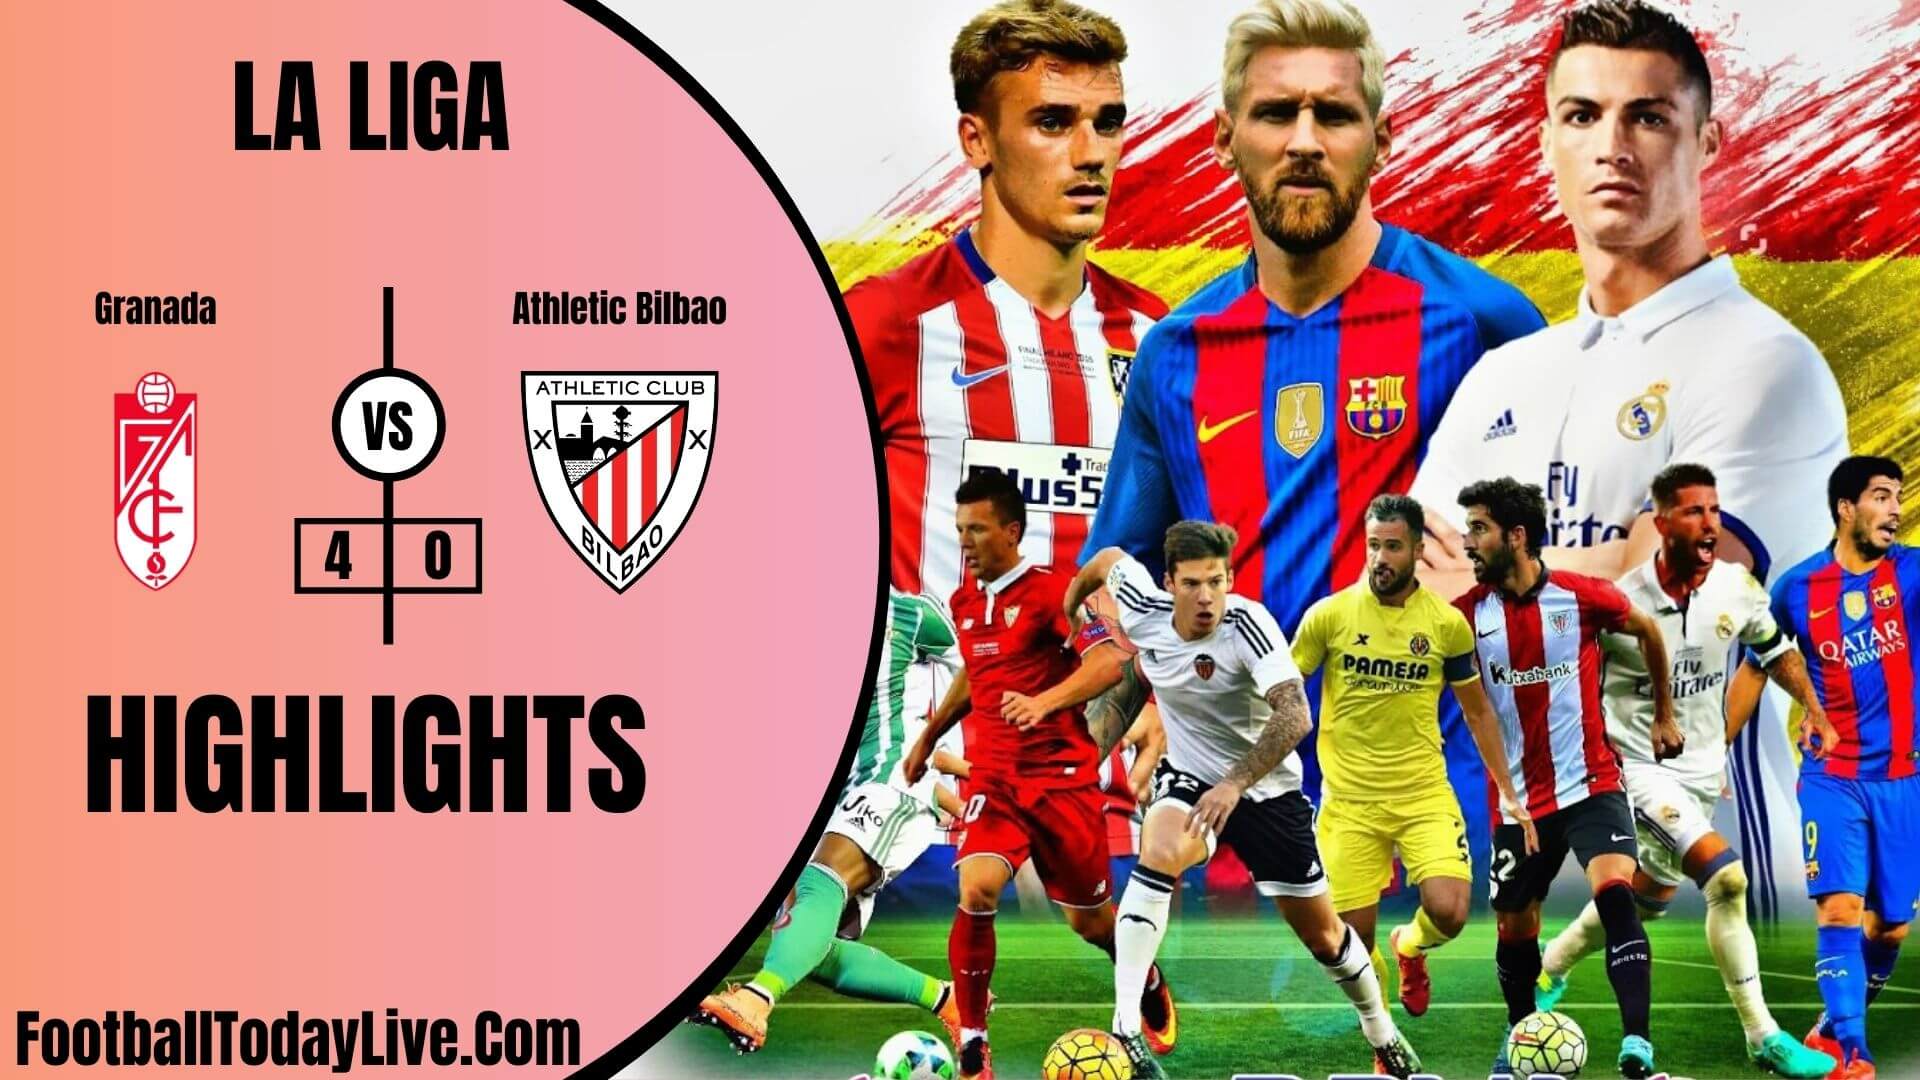 Granada Vs Athletic Bilbao Highlights 2020 La Liga Week 38